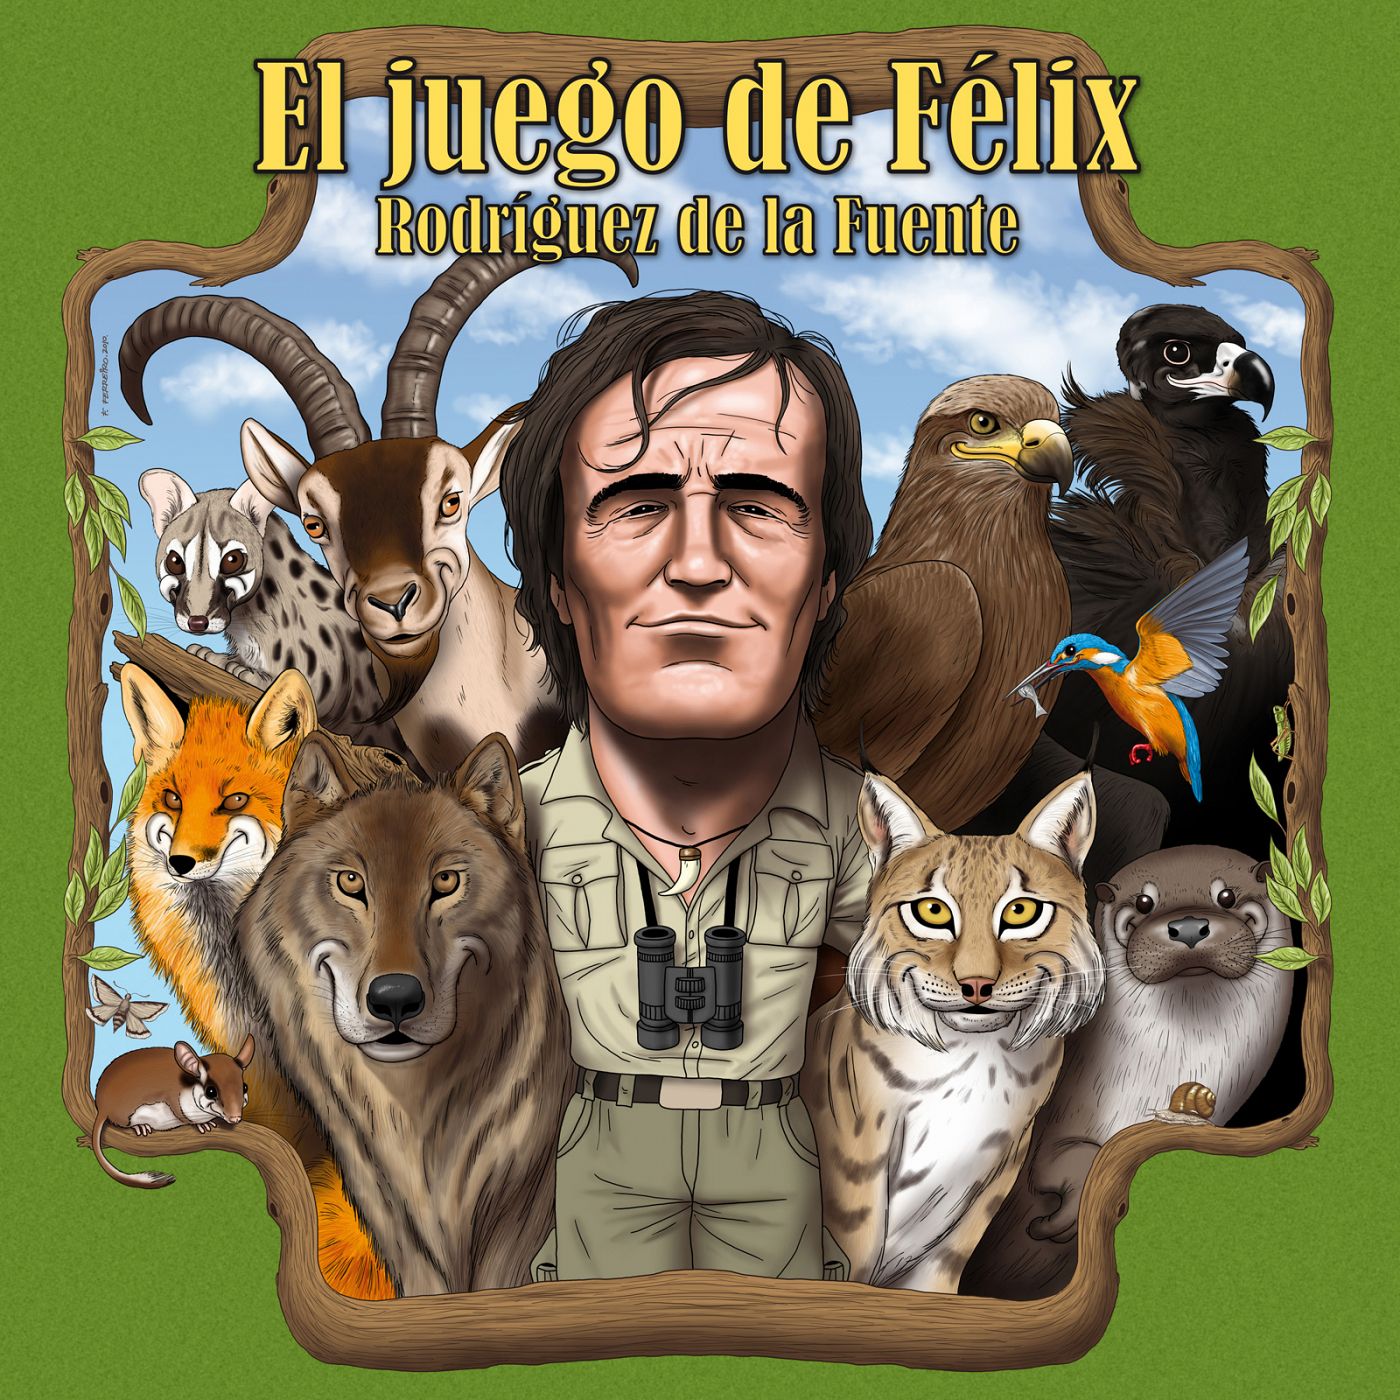 Ilustración del juego de mesa de Félix Rodríguez de la Fuente